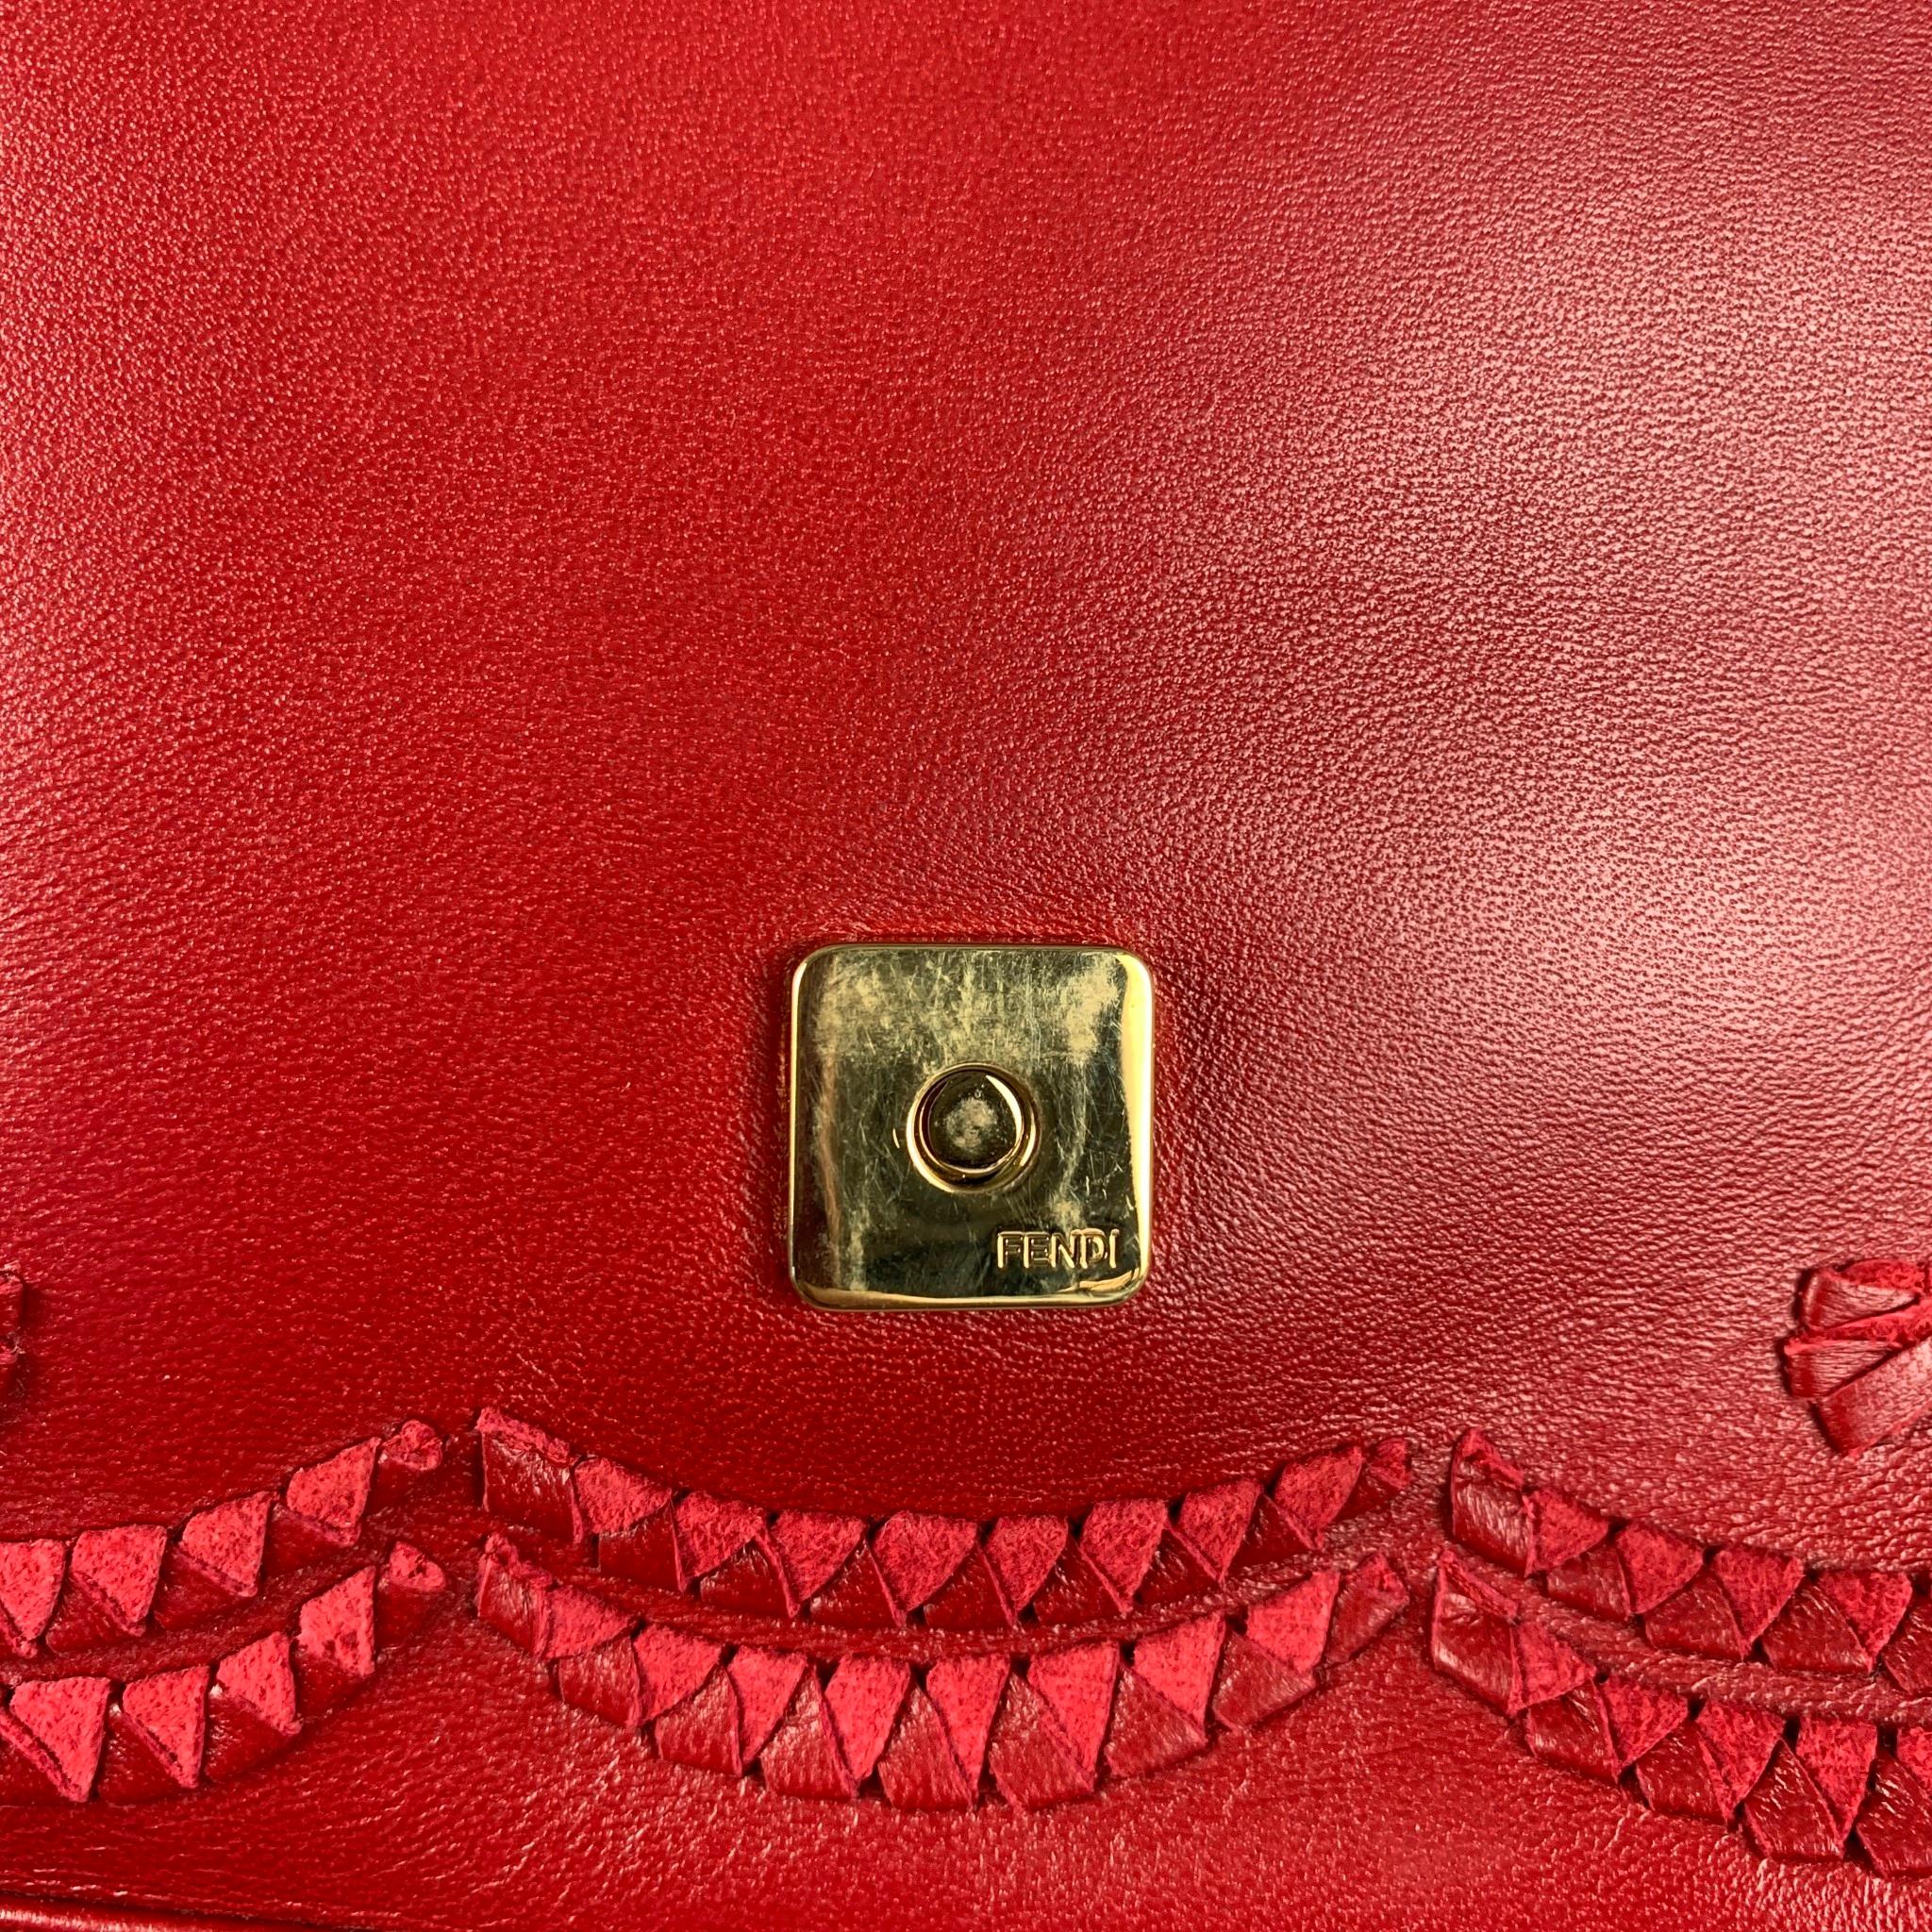 FENDI Red Floral Leather Baguette Shoulder Handbag 2